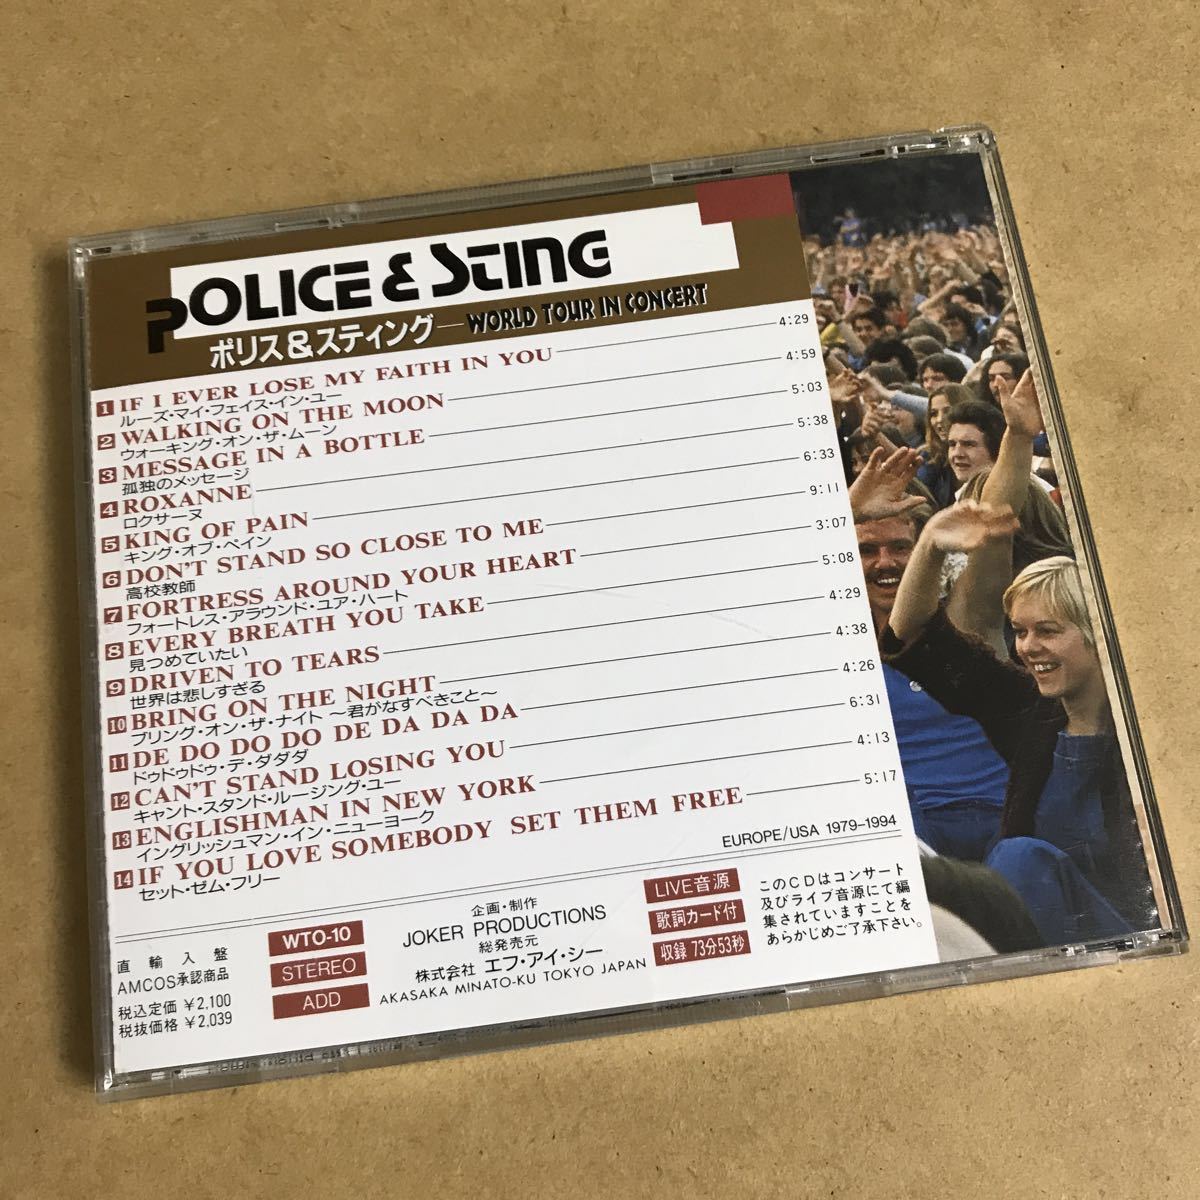 THE POLICE / STING - WORLD TOUR IN CONCERT ポリス&スティング ワールド ツアー イン コンサート CD ライブ音源_画像4